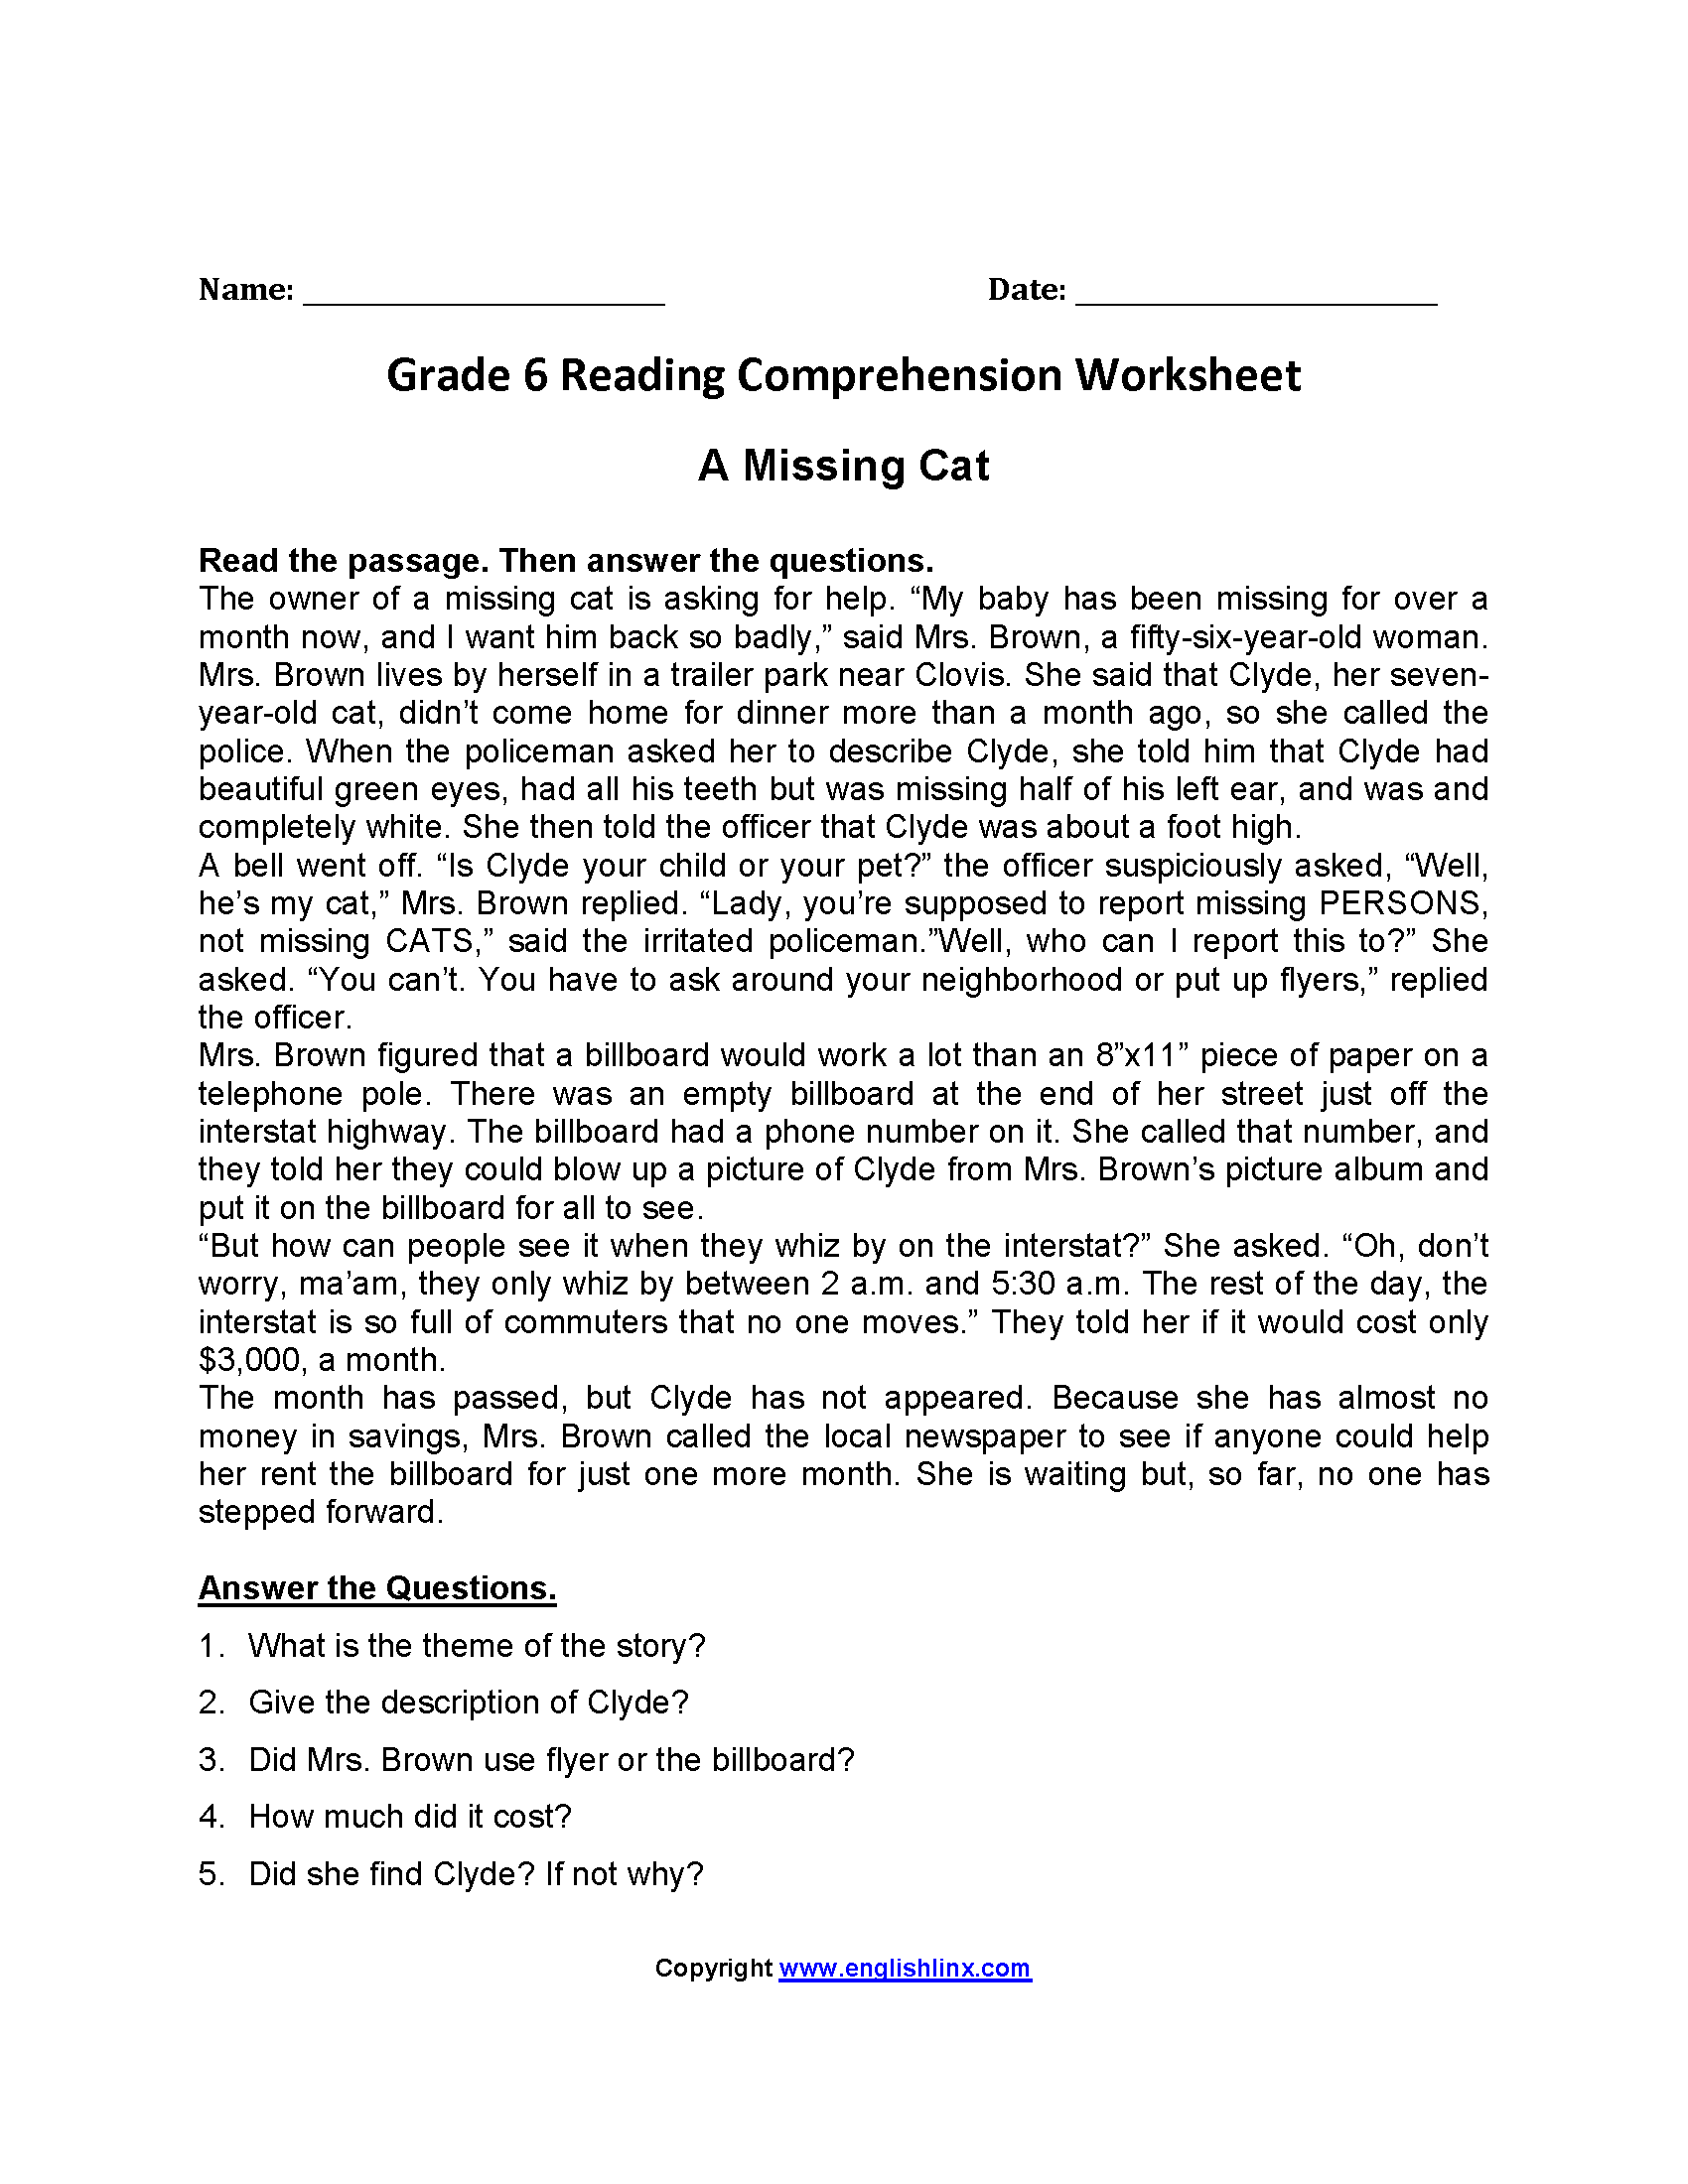 worksheet-reading-comprehension-worksheets-6th-grade-grass-fedjp